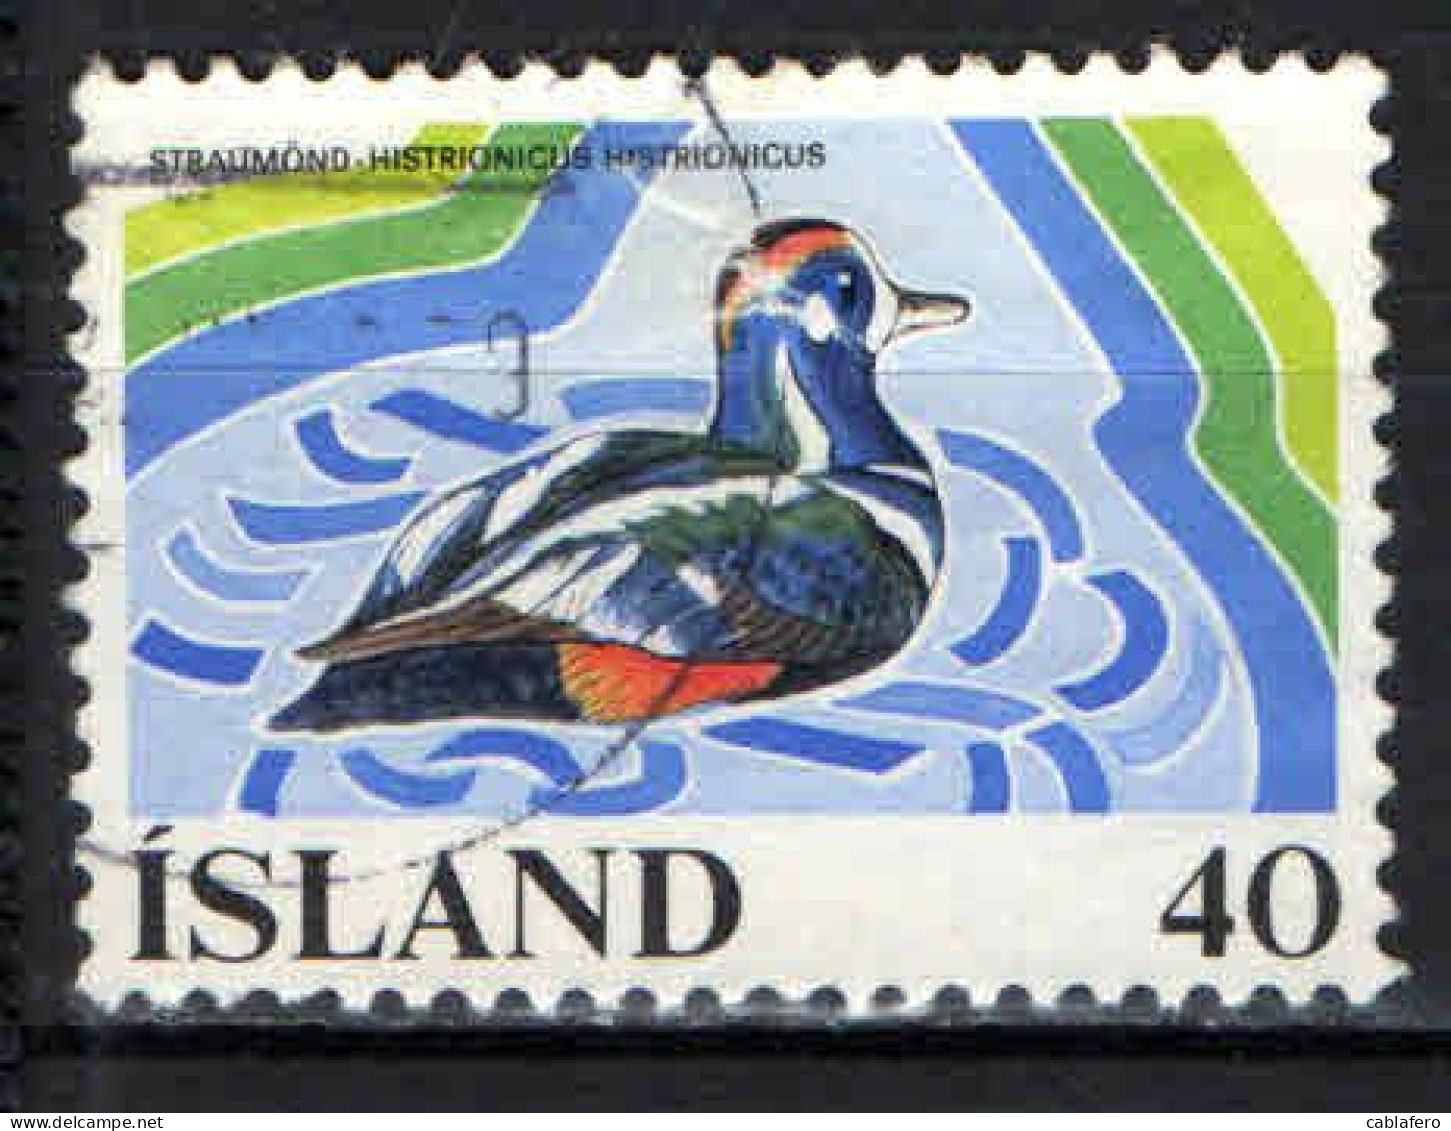 ISLANDA - 1977 - CAMPAGNA EUIROPEA PER LA CONSERVAZIONE DELLE ZONE UMIDE - USATO - Used Stamps